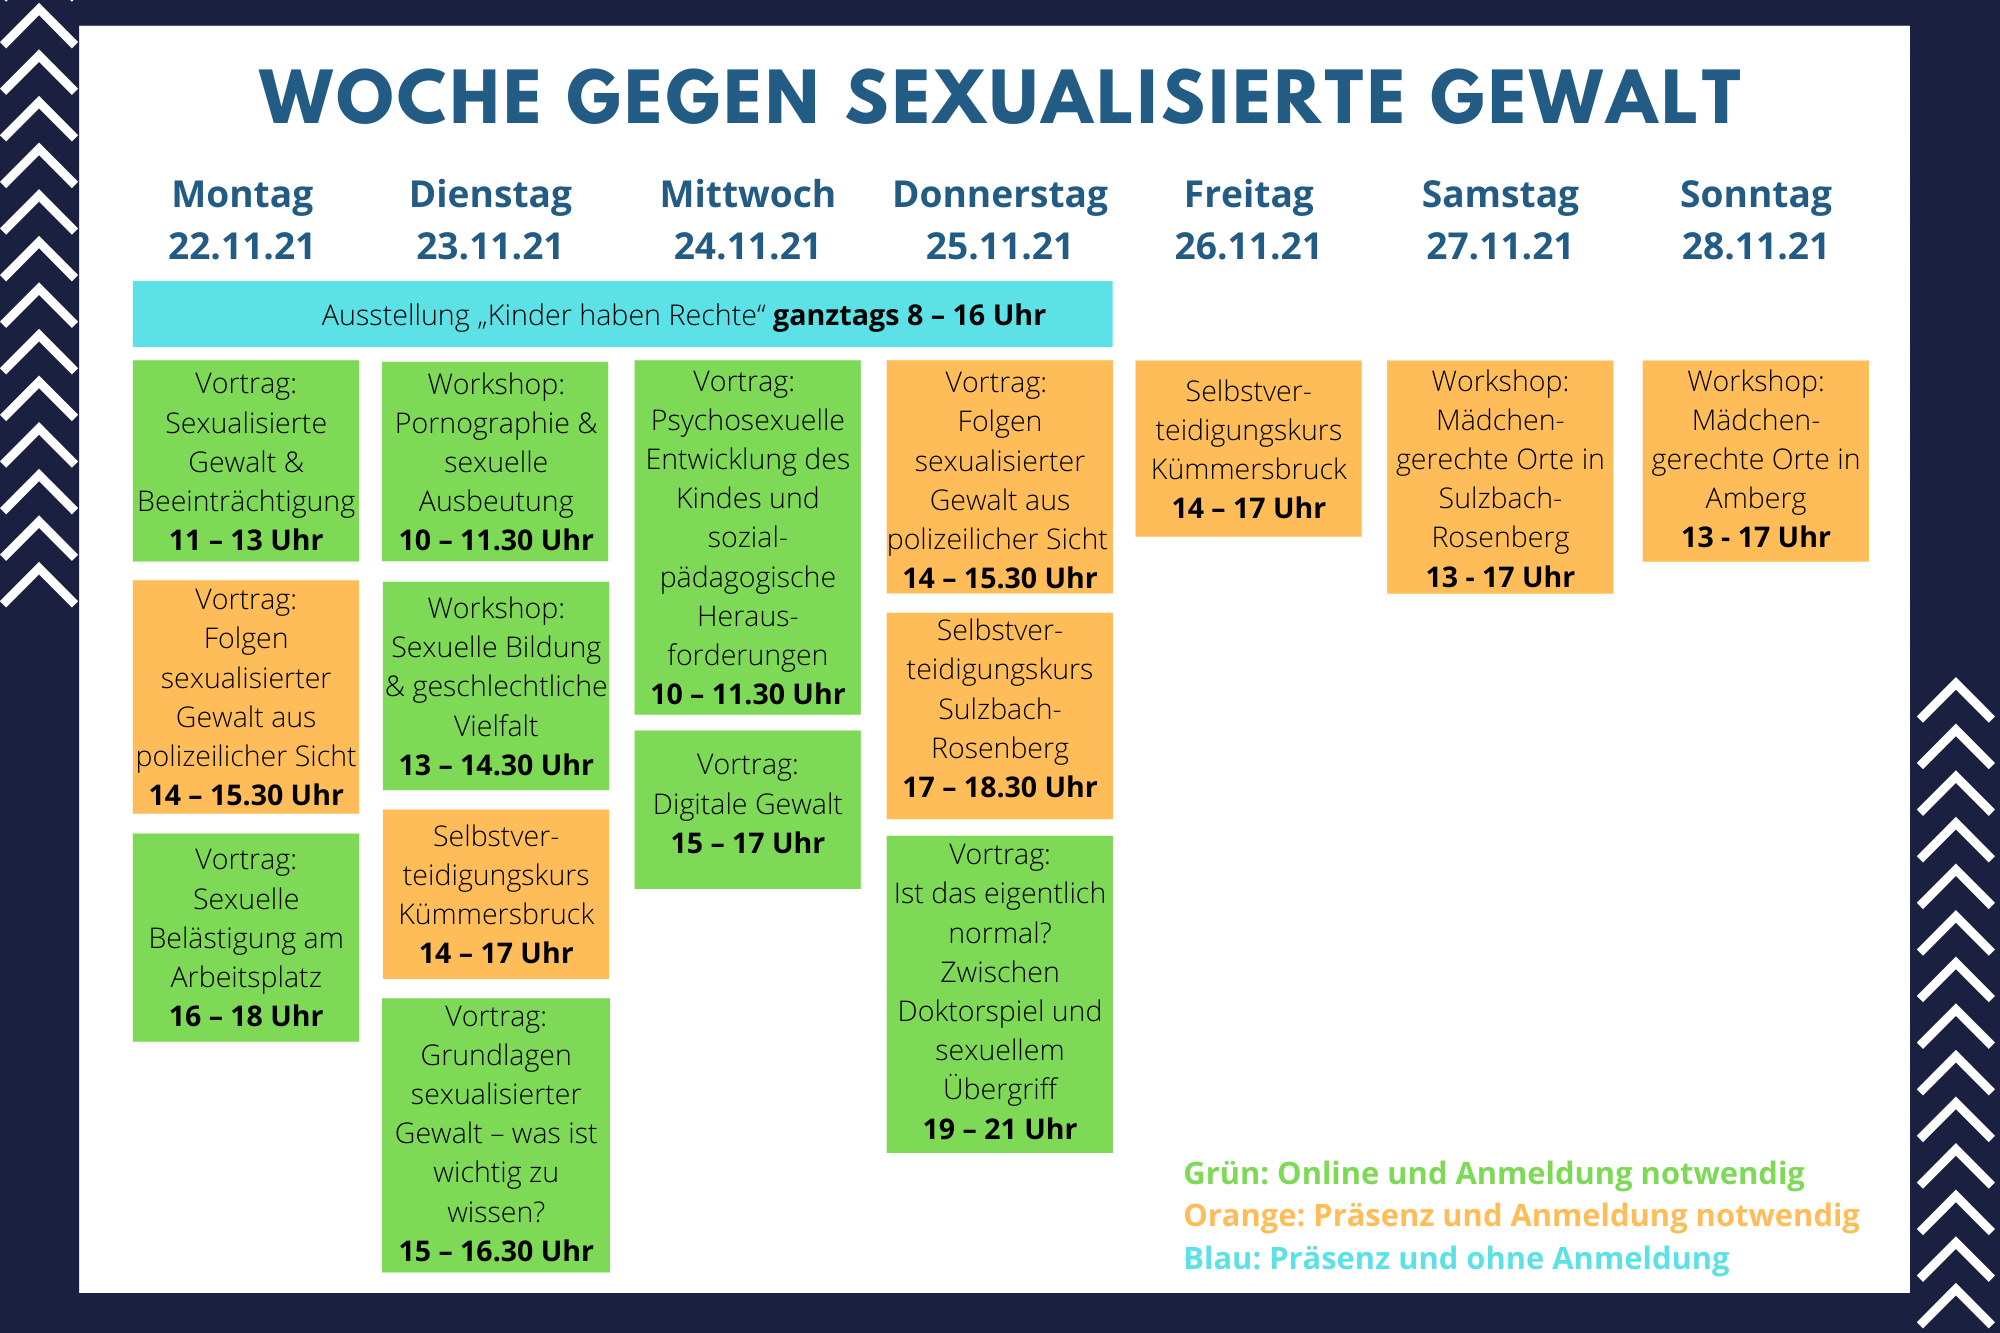 Woche gegen sexualisierte Gewalt ab 22.11.